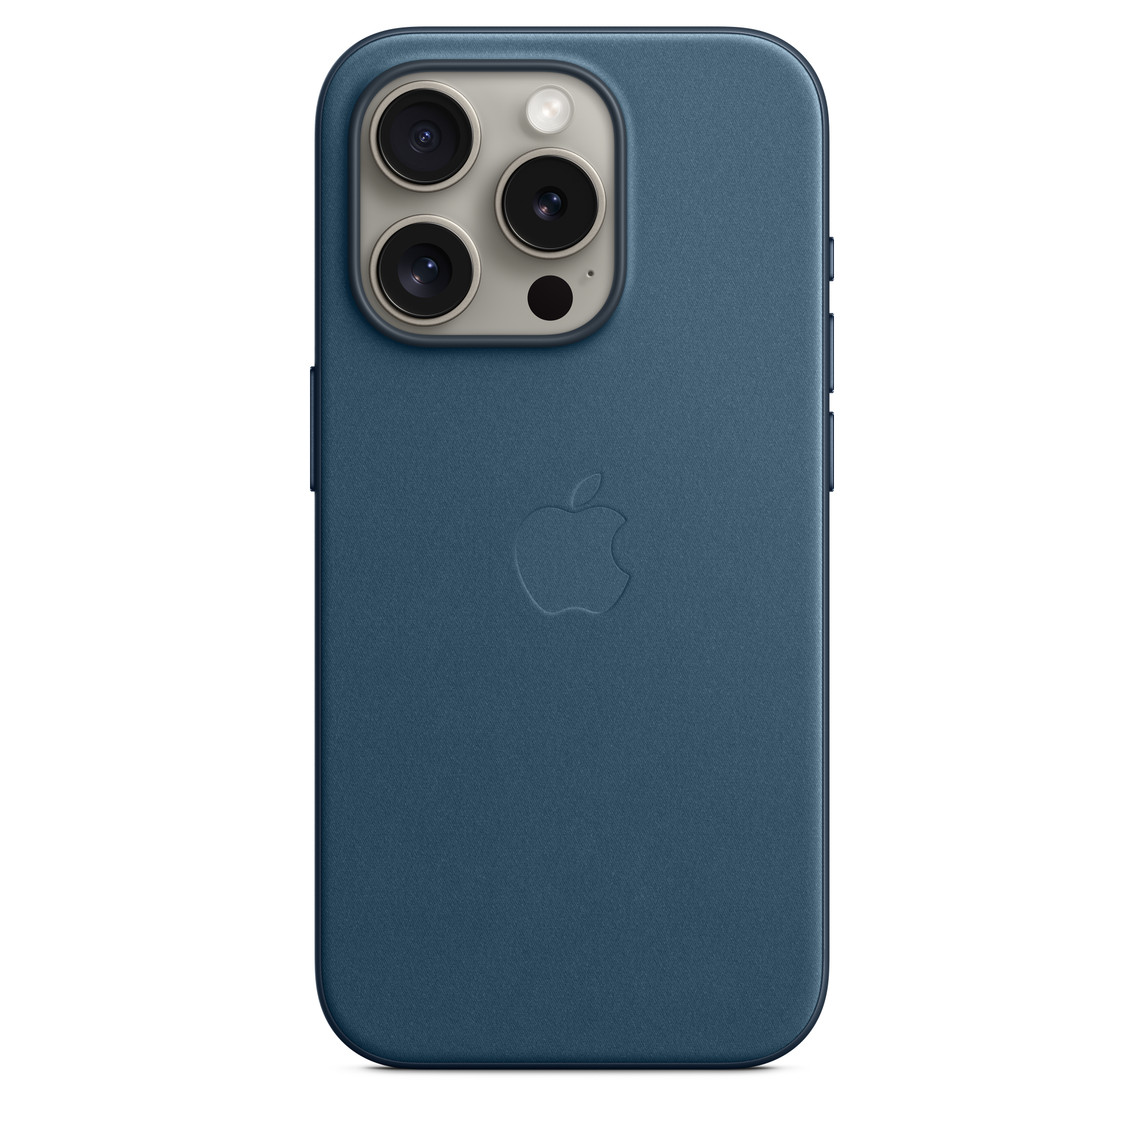 Etui z tkaniny FineWoven w kolorze głębi oceanu z MagSafe do iPhone’a 15 Pro przyczepione do iPhone’a 15 Pro w kolorze tytanu naturalnego. Wytłoczone logo Apple pośrodku etui. iPhone widoczny przez wycięcie na aparat.